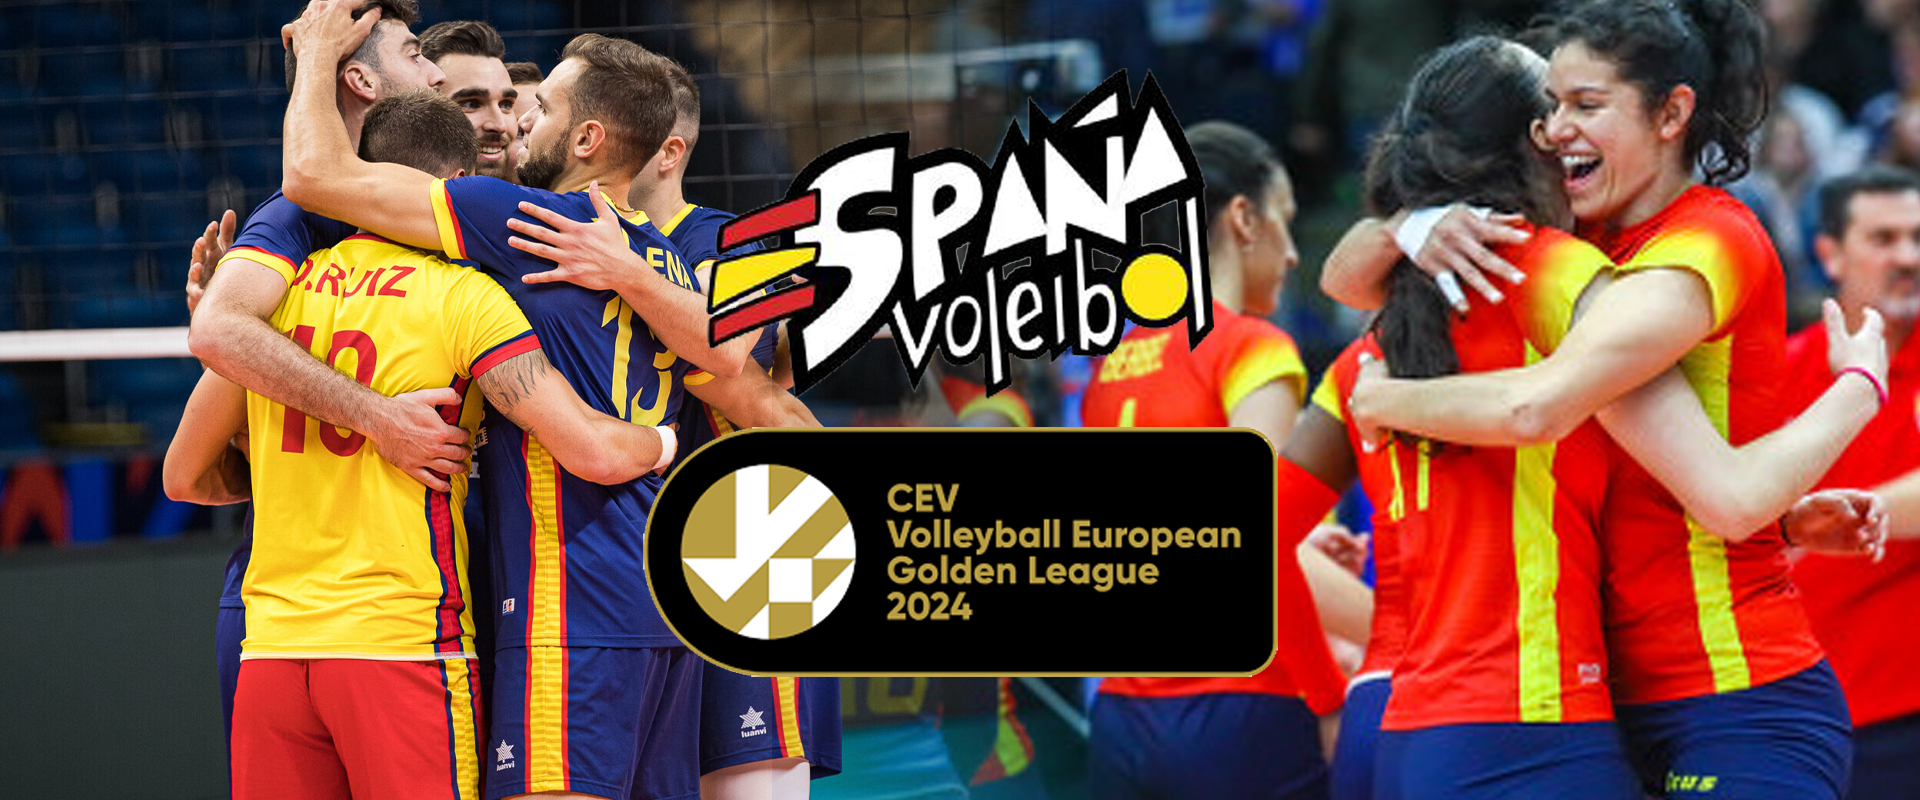 España volverá a disputar la CEV Golden League tanto masculina como femenina